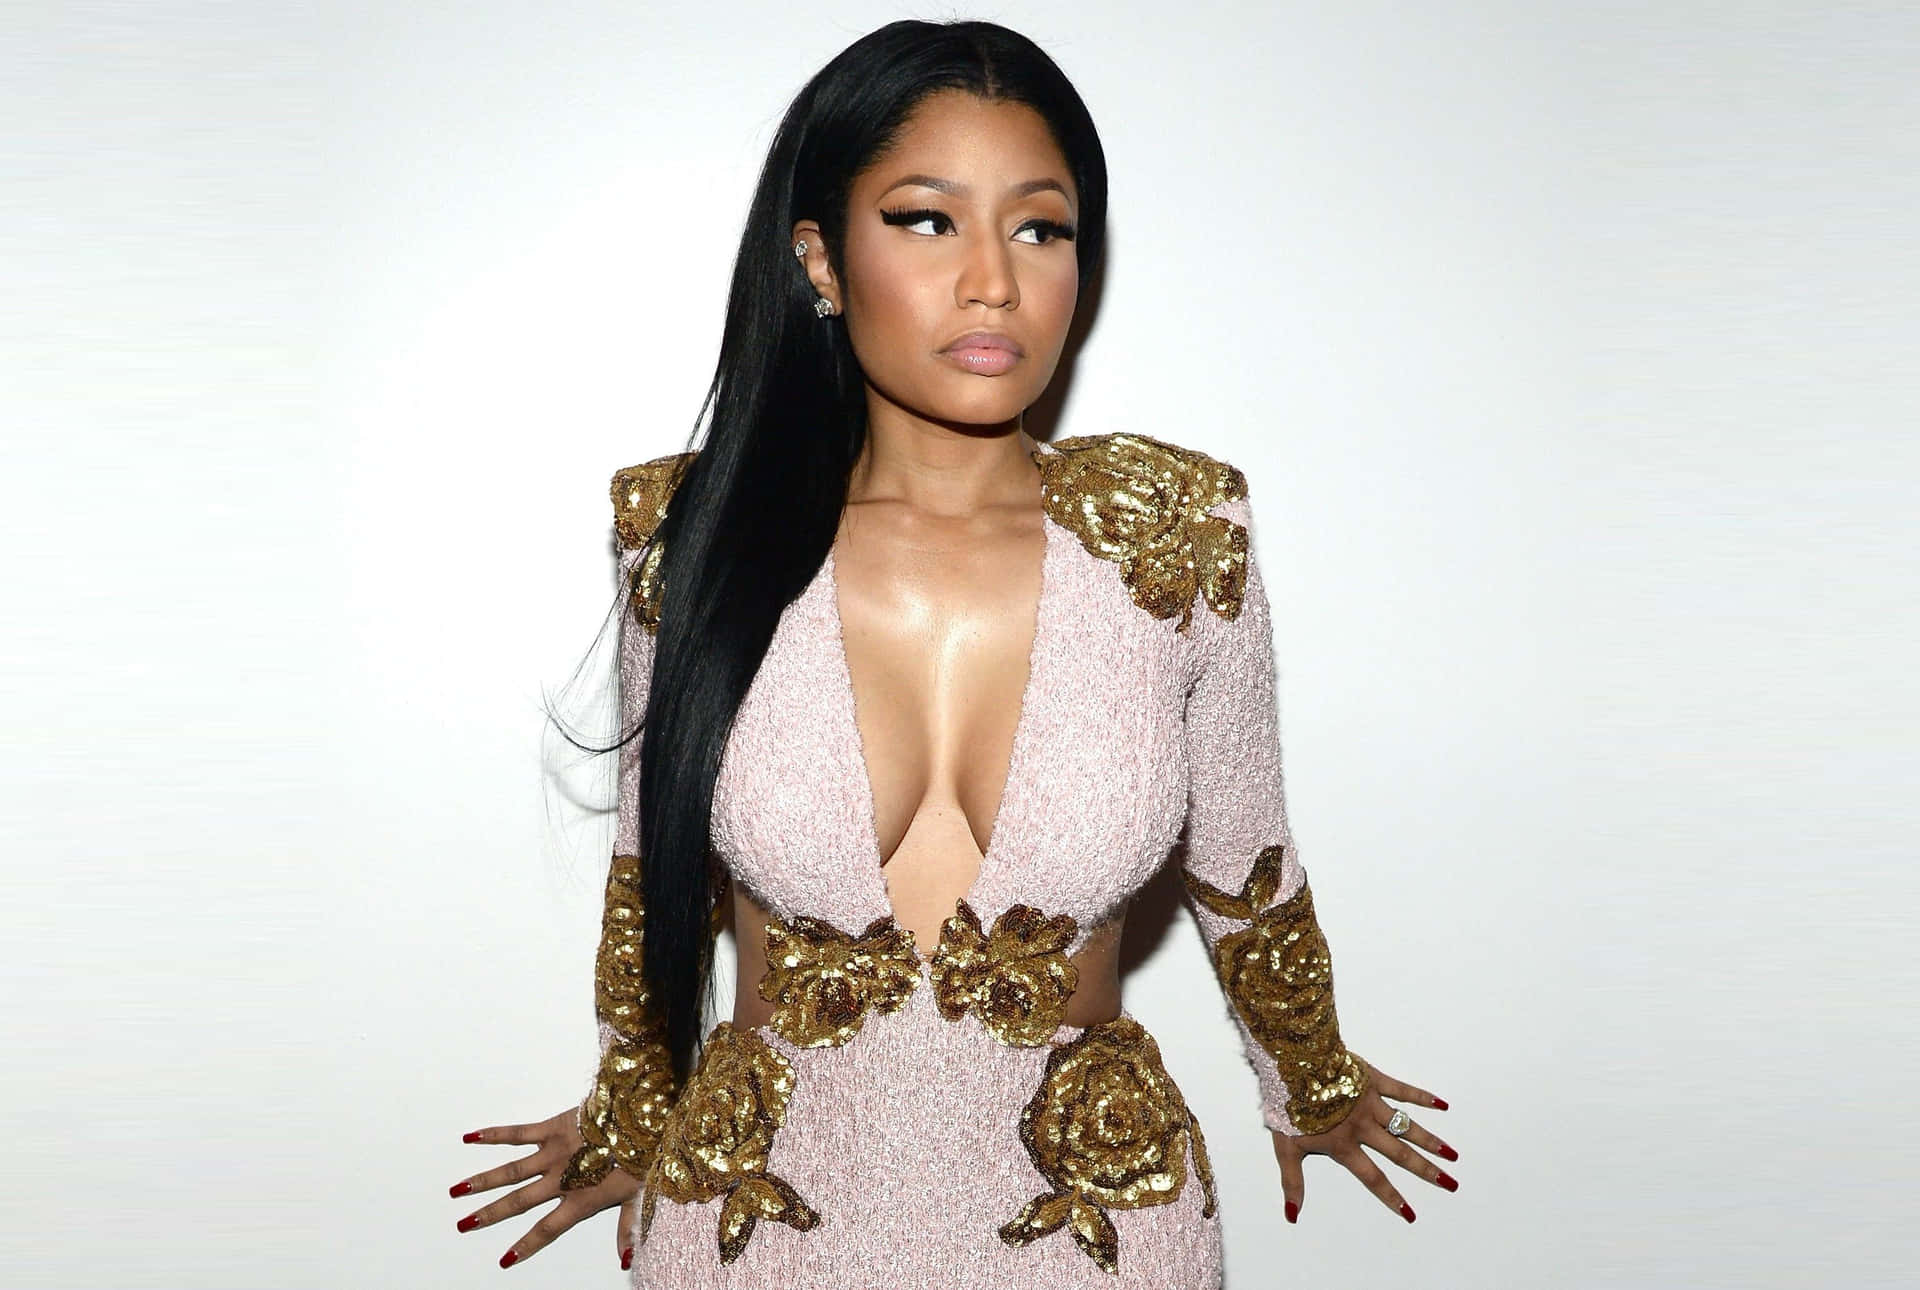 Nicki Minaj posing elegantly in a colorful outfit